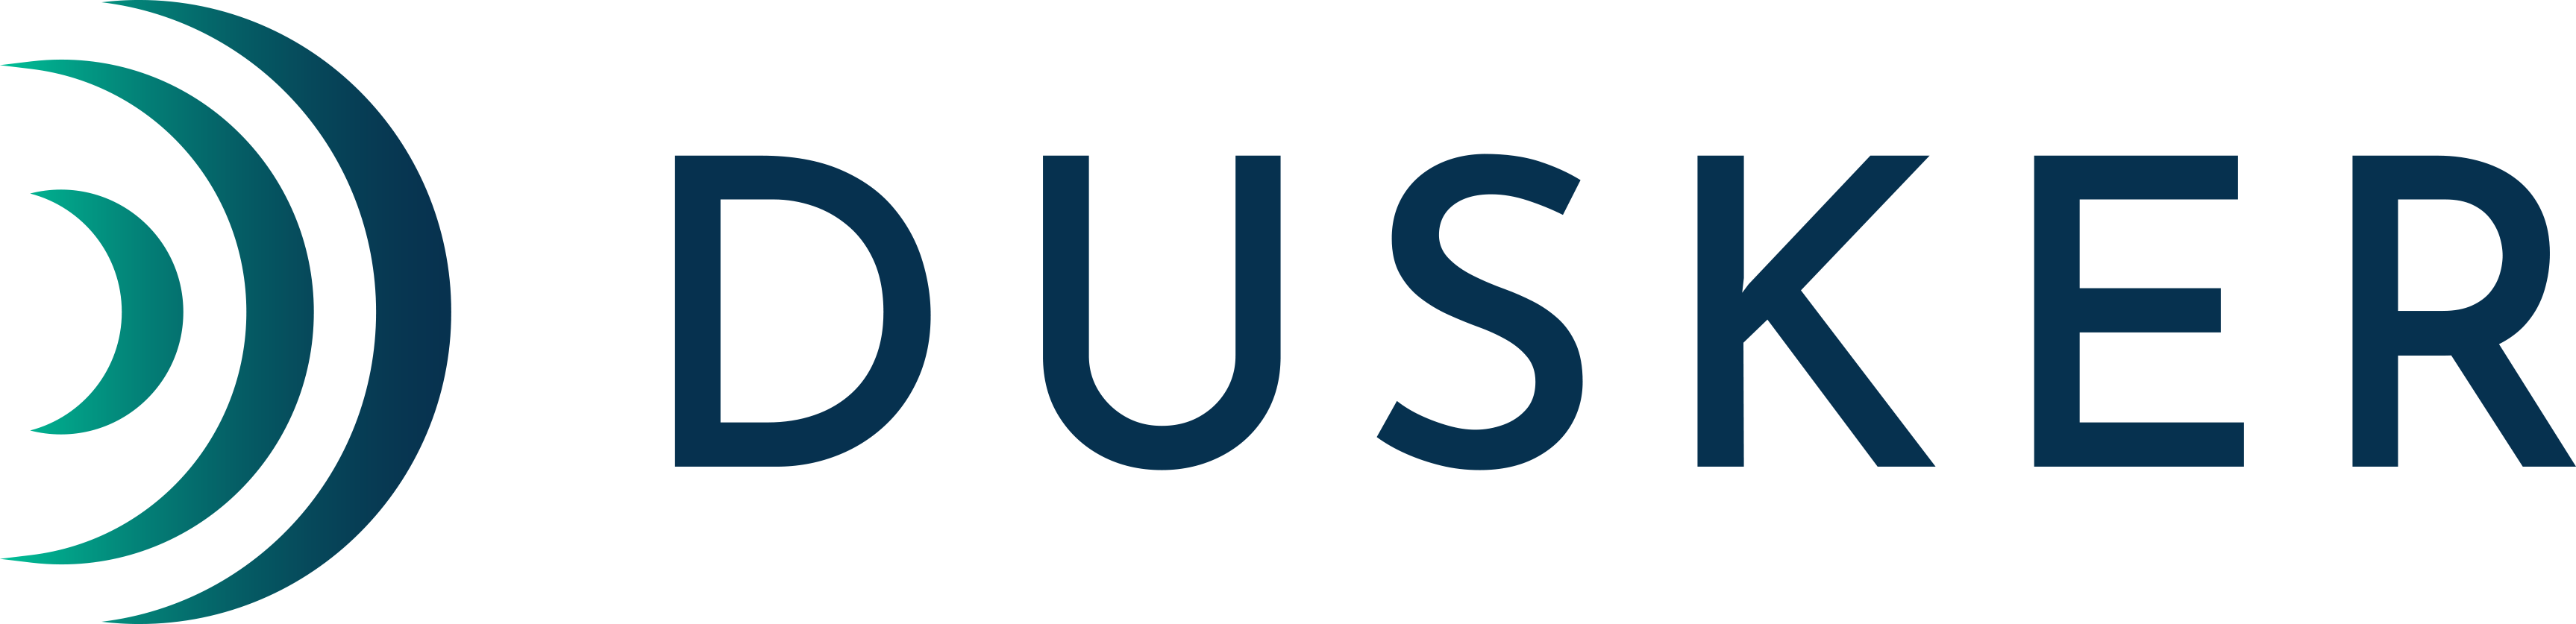 Dusker logo